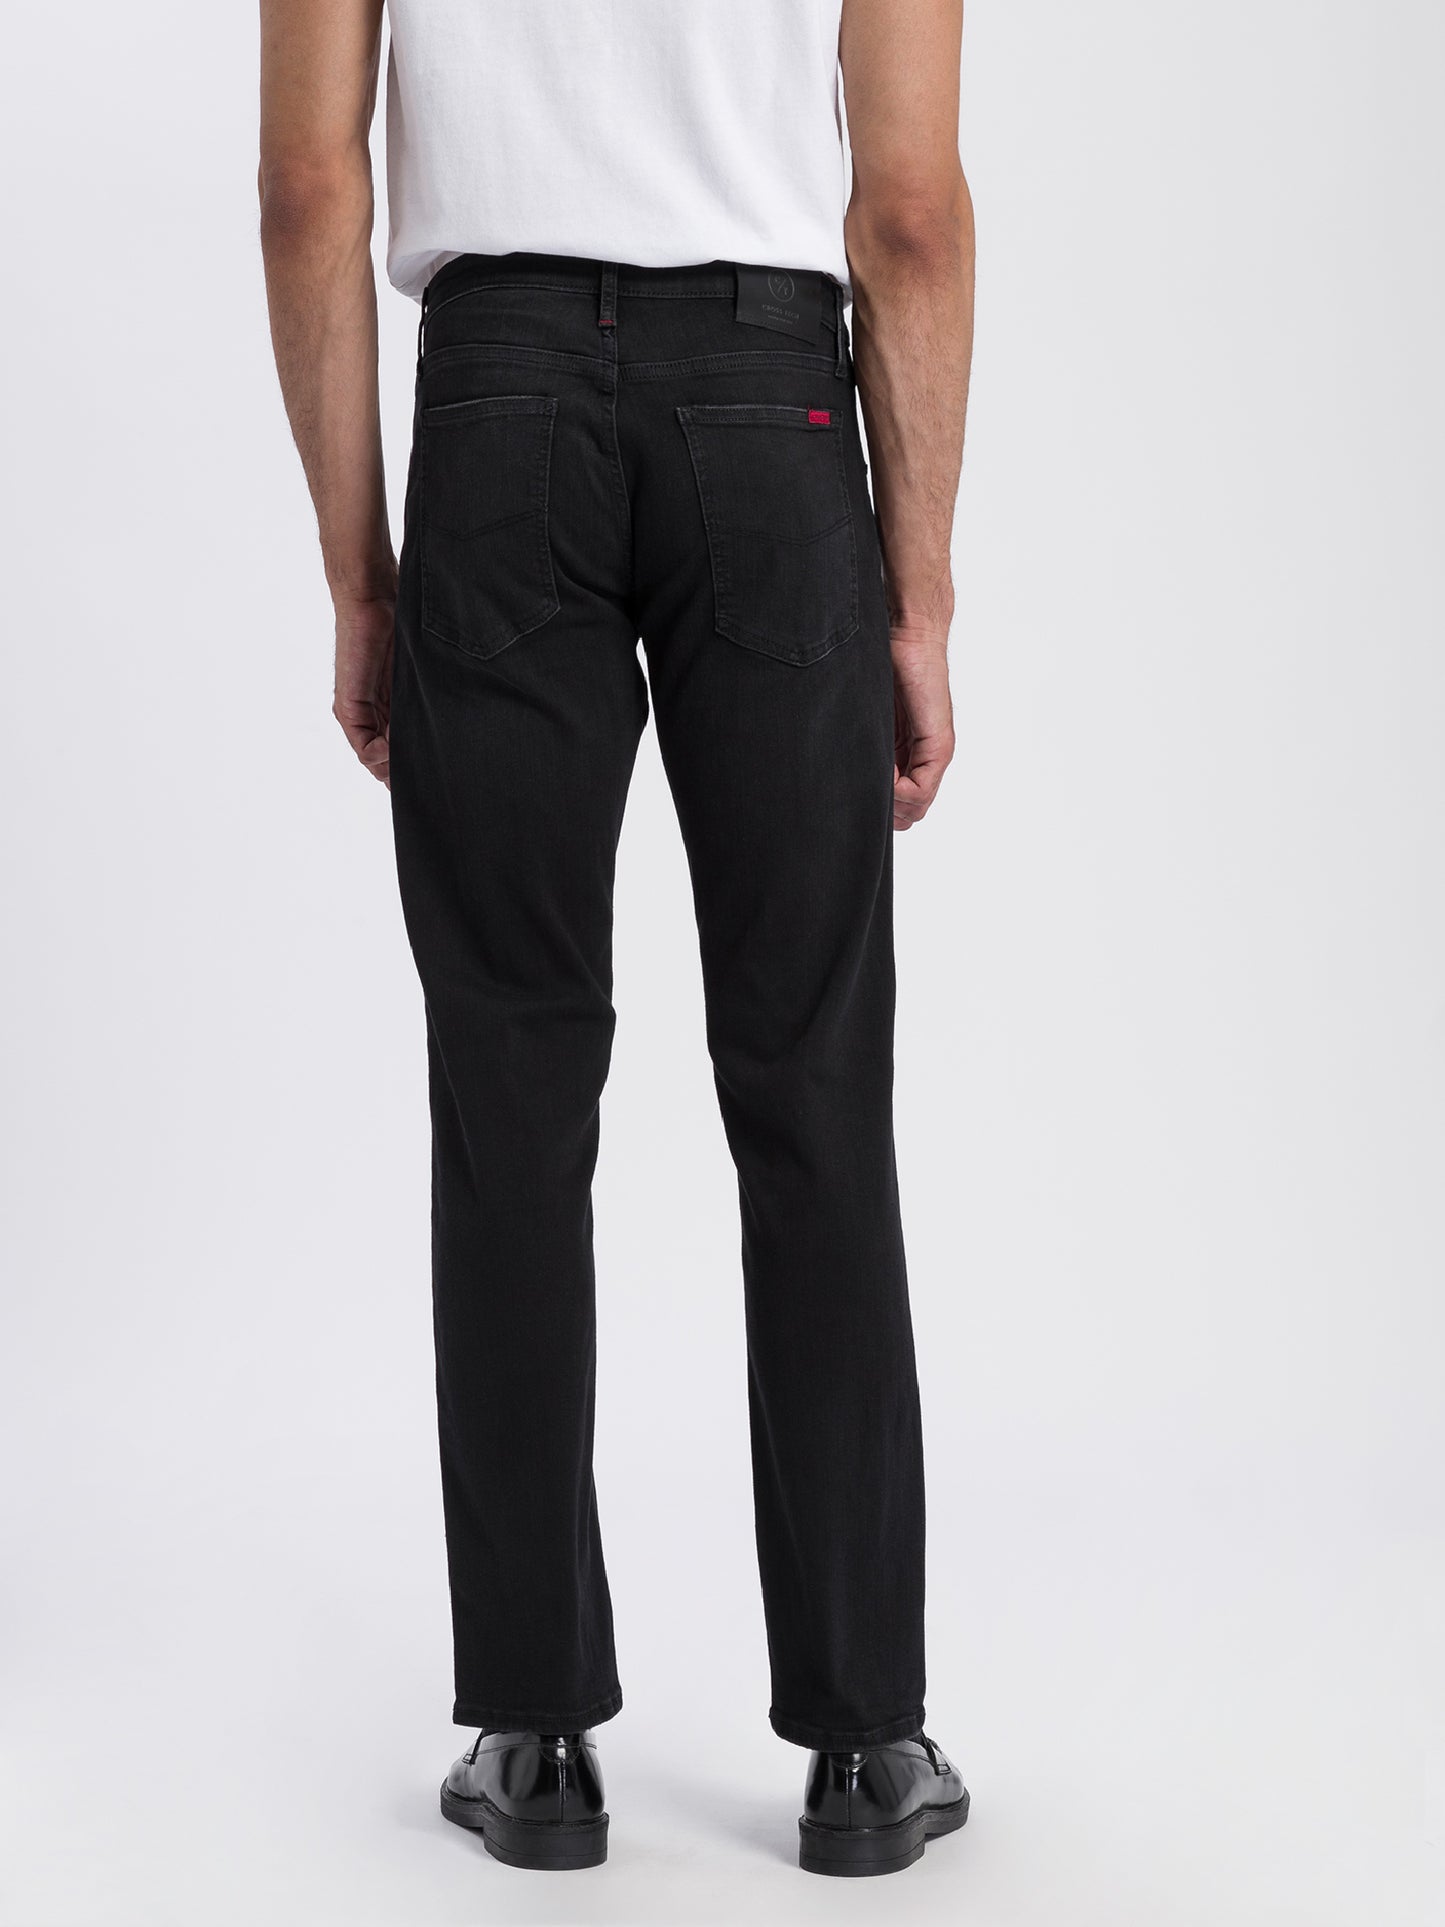 Damien men's jeans slim fit regular waist straight leg black